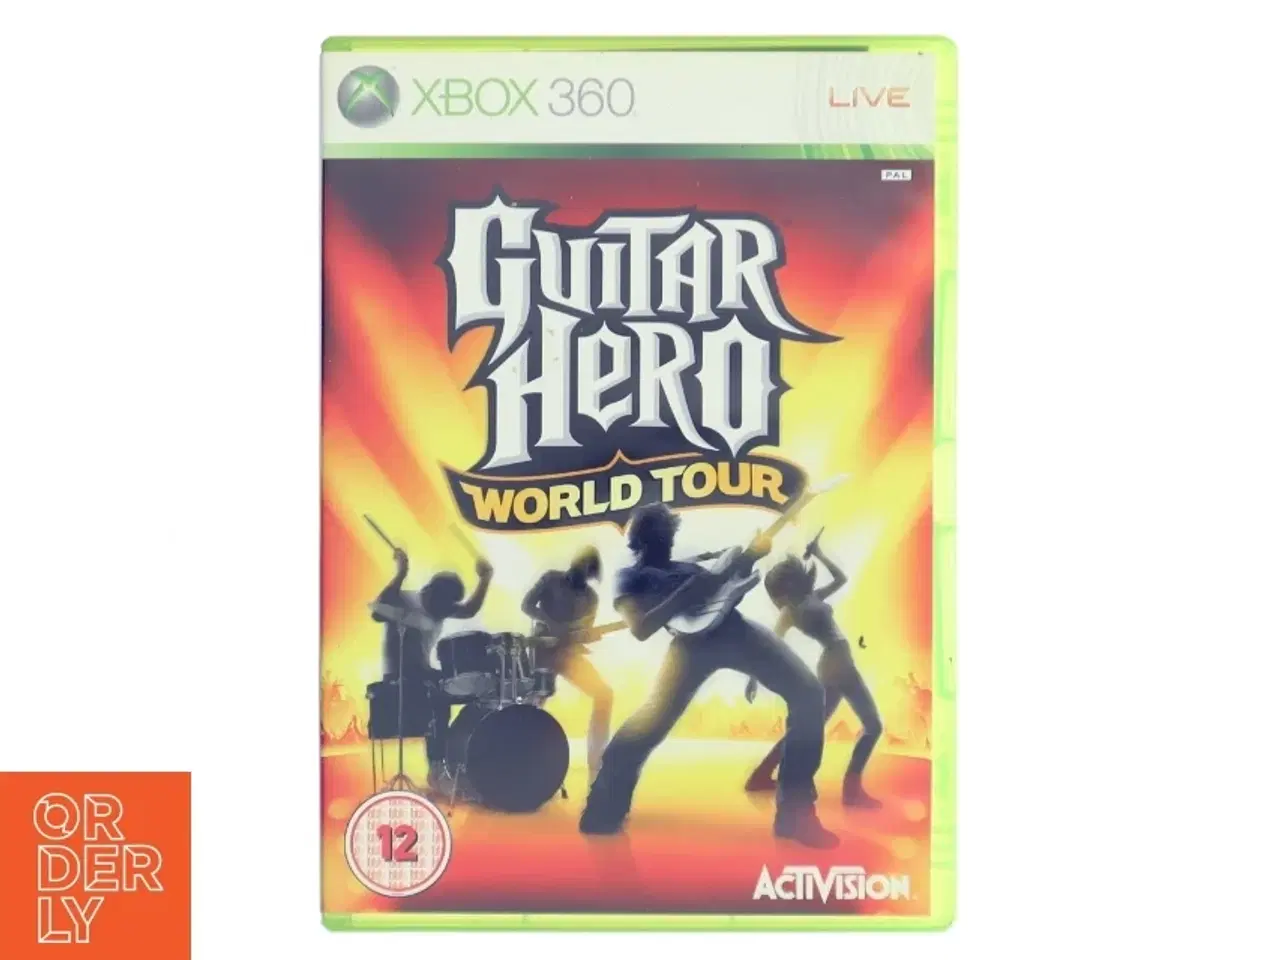 Billede 1 - Guitar Hero: World Tour Xbox 360 spil fra Activision